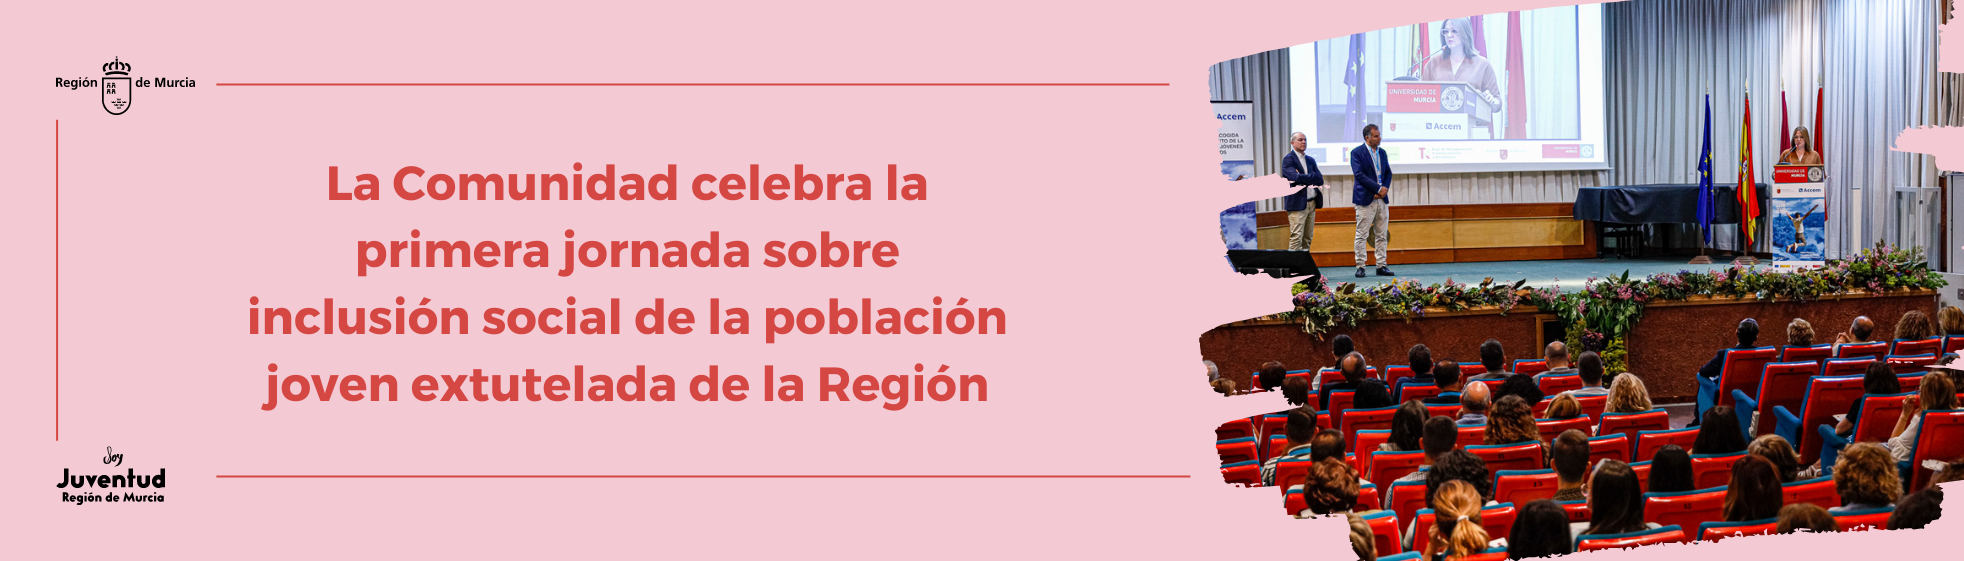 La Comunidad celebra la primera jornada sobre inclusión social de la población joven extutelada de la Región de Murcia